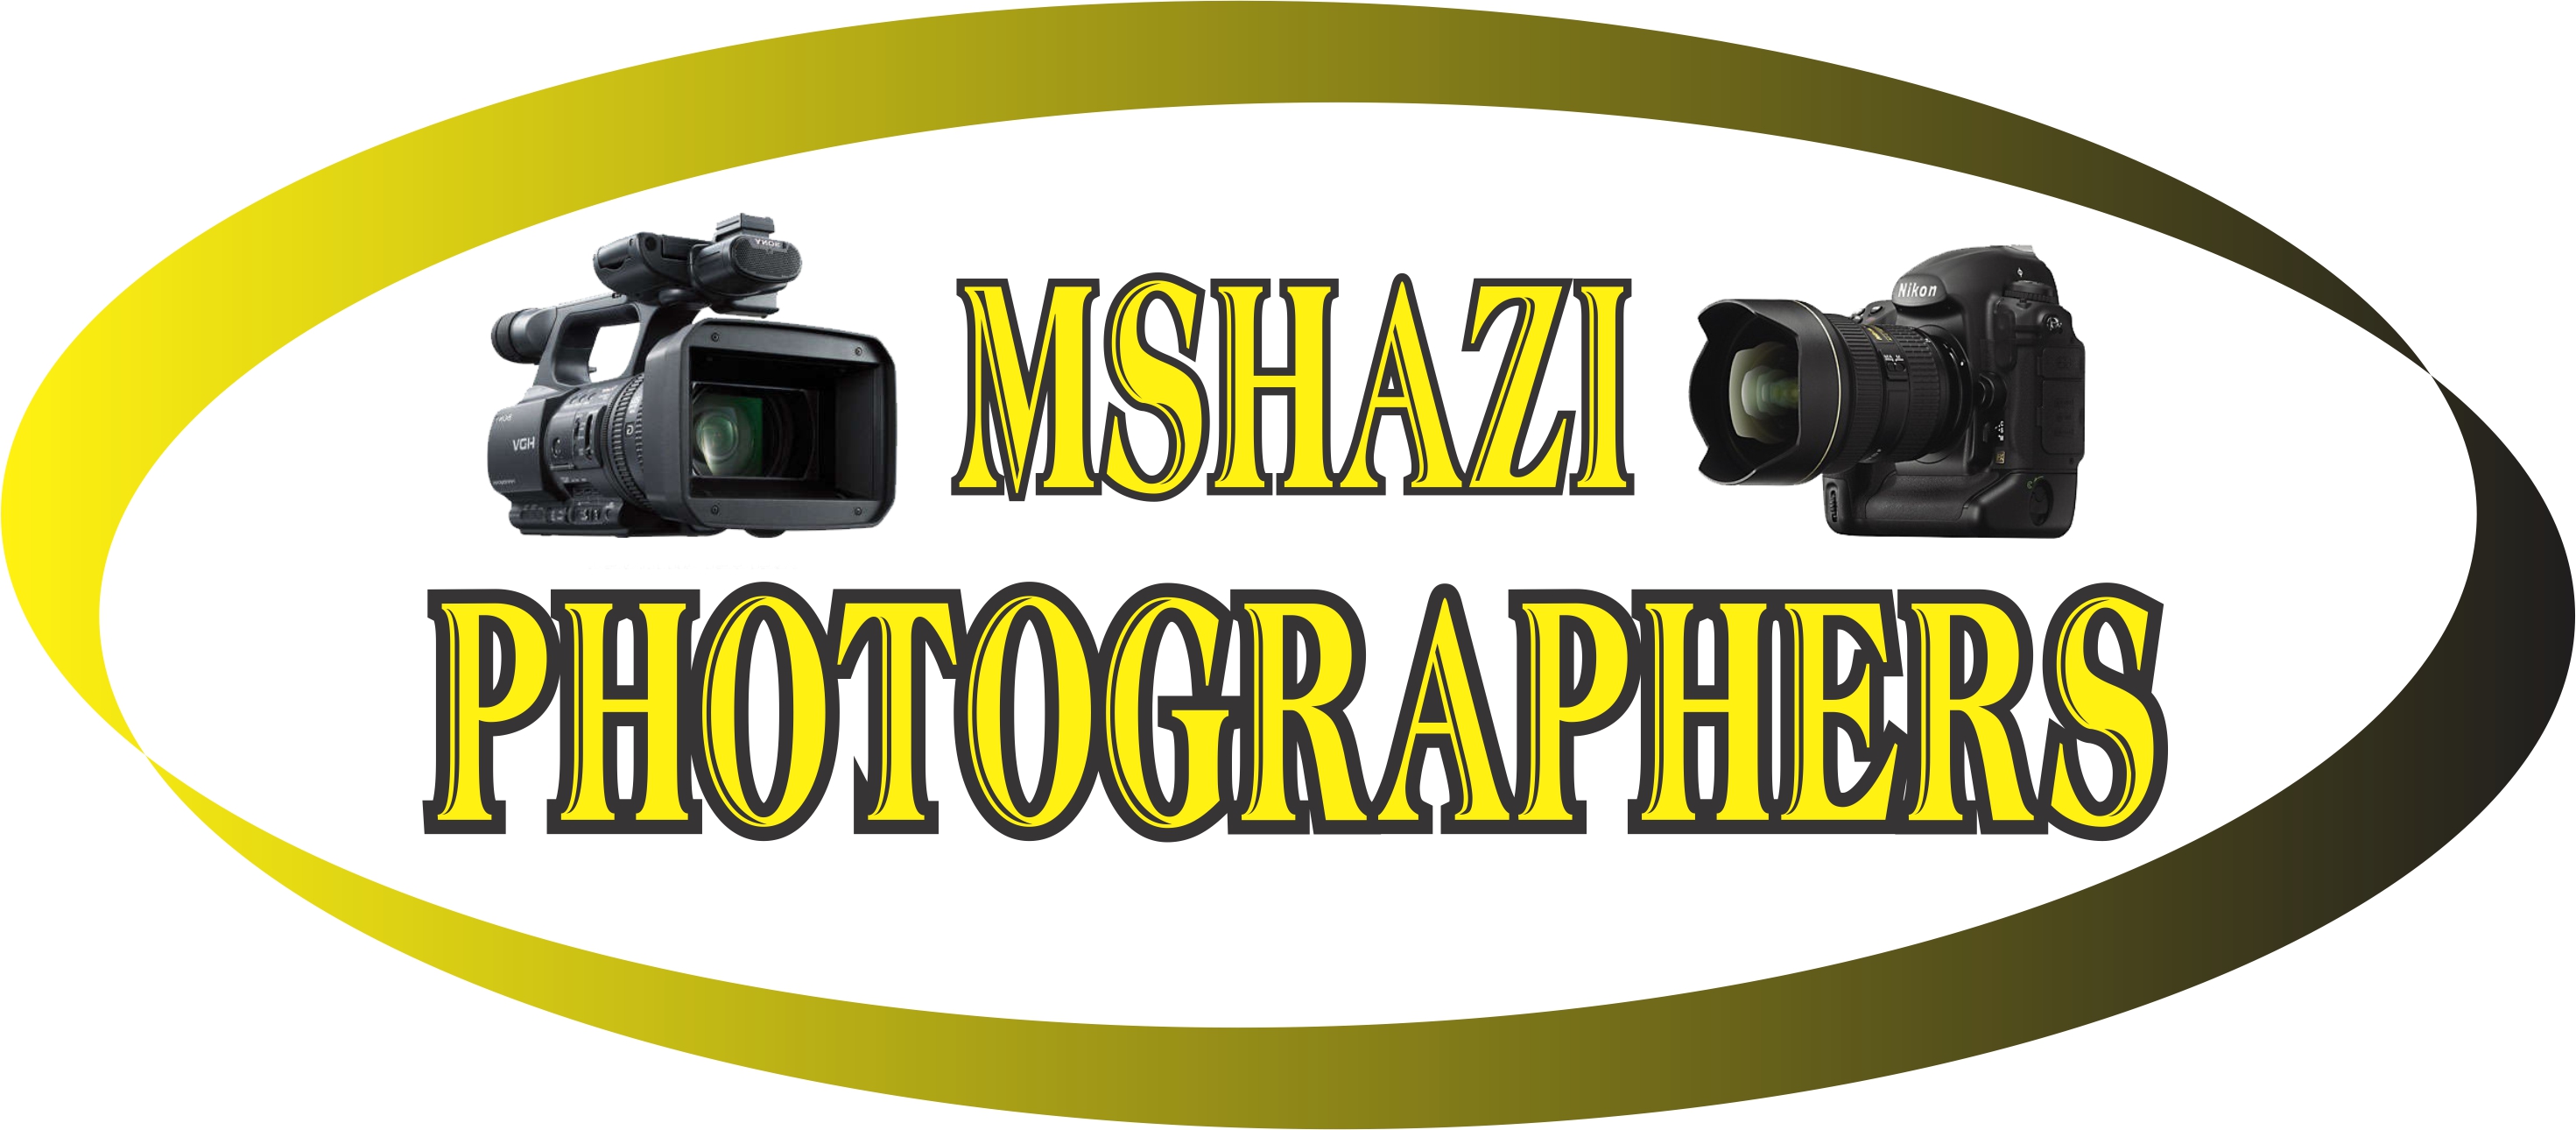 Mshazi Photographers